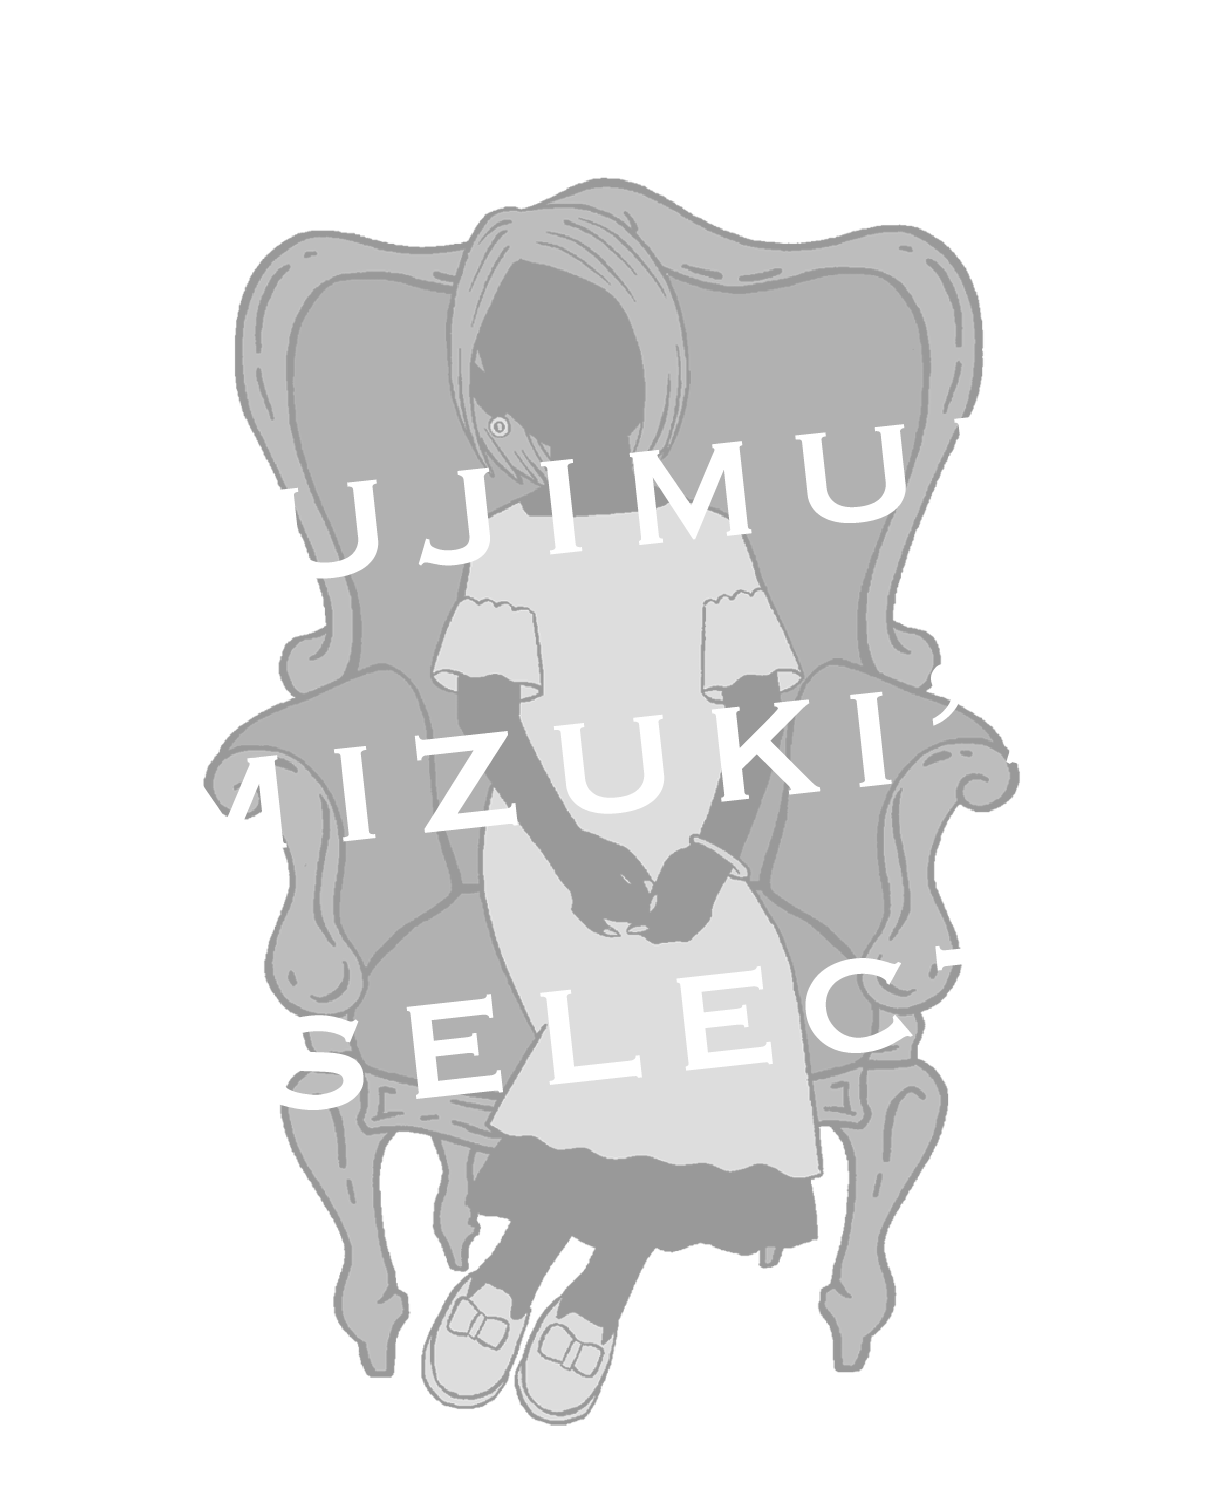 tsujimura mizuki's select